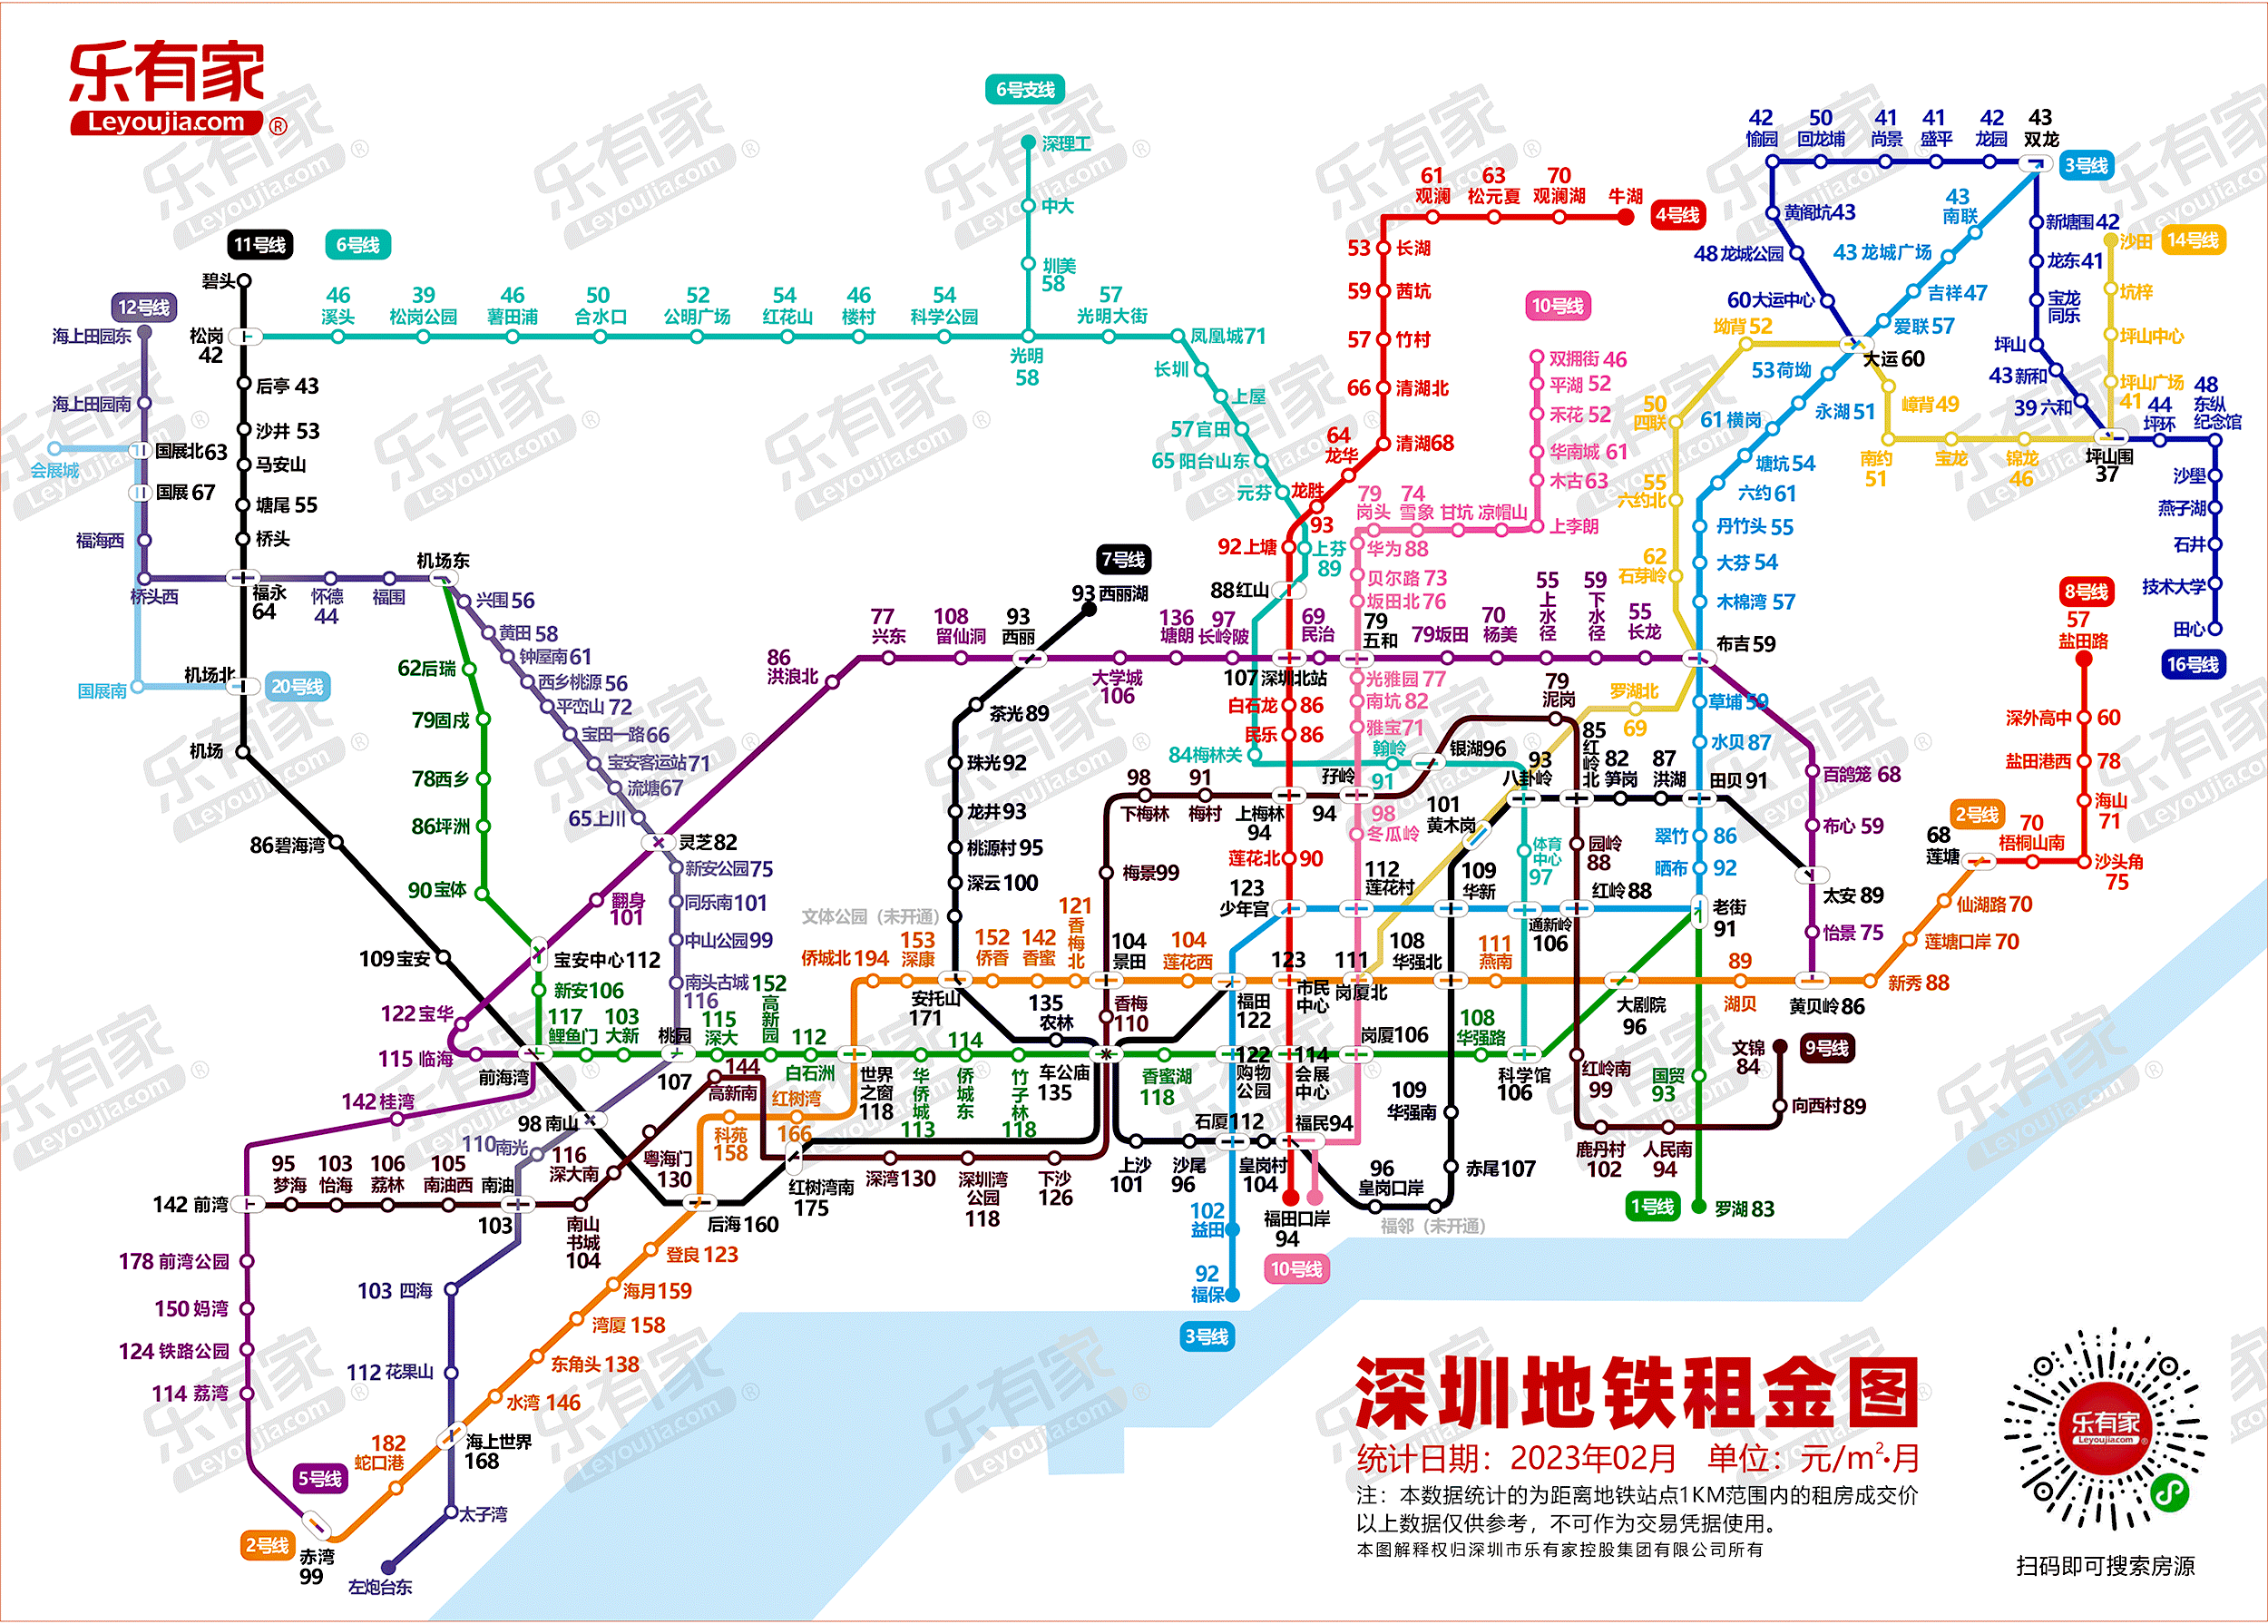 2023租房指南:租金跌回2020,最新深圳地铁房租图发布